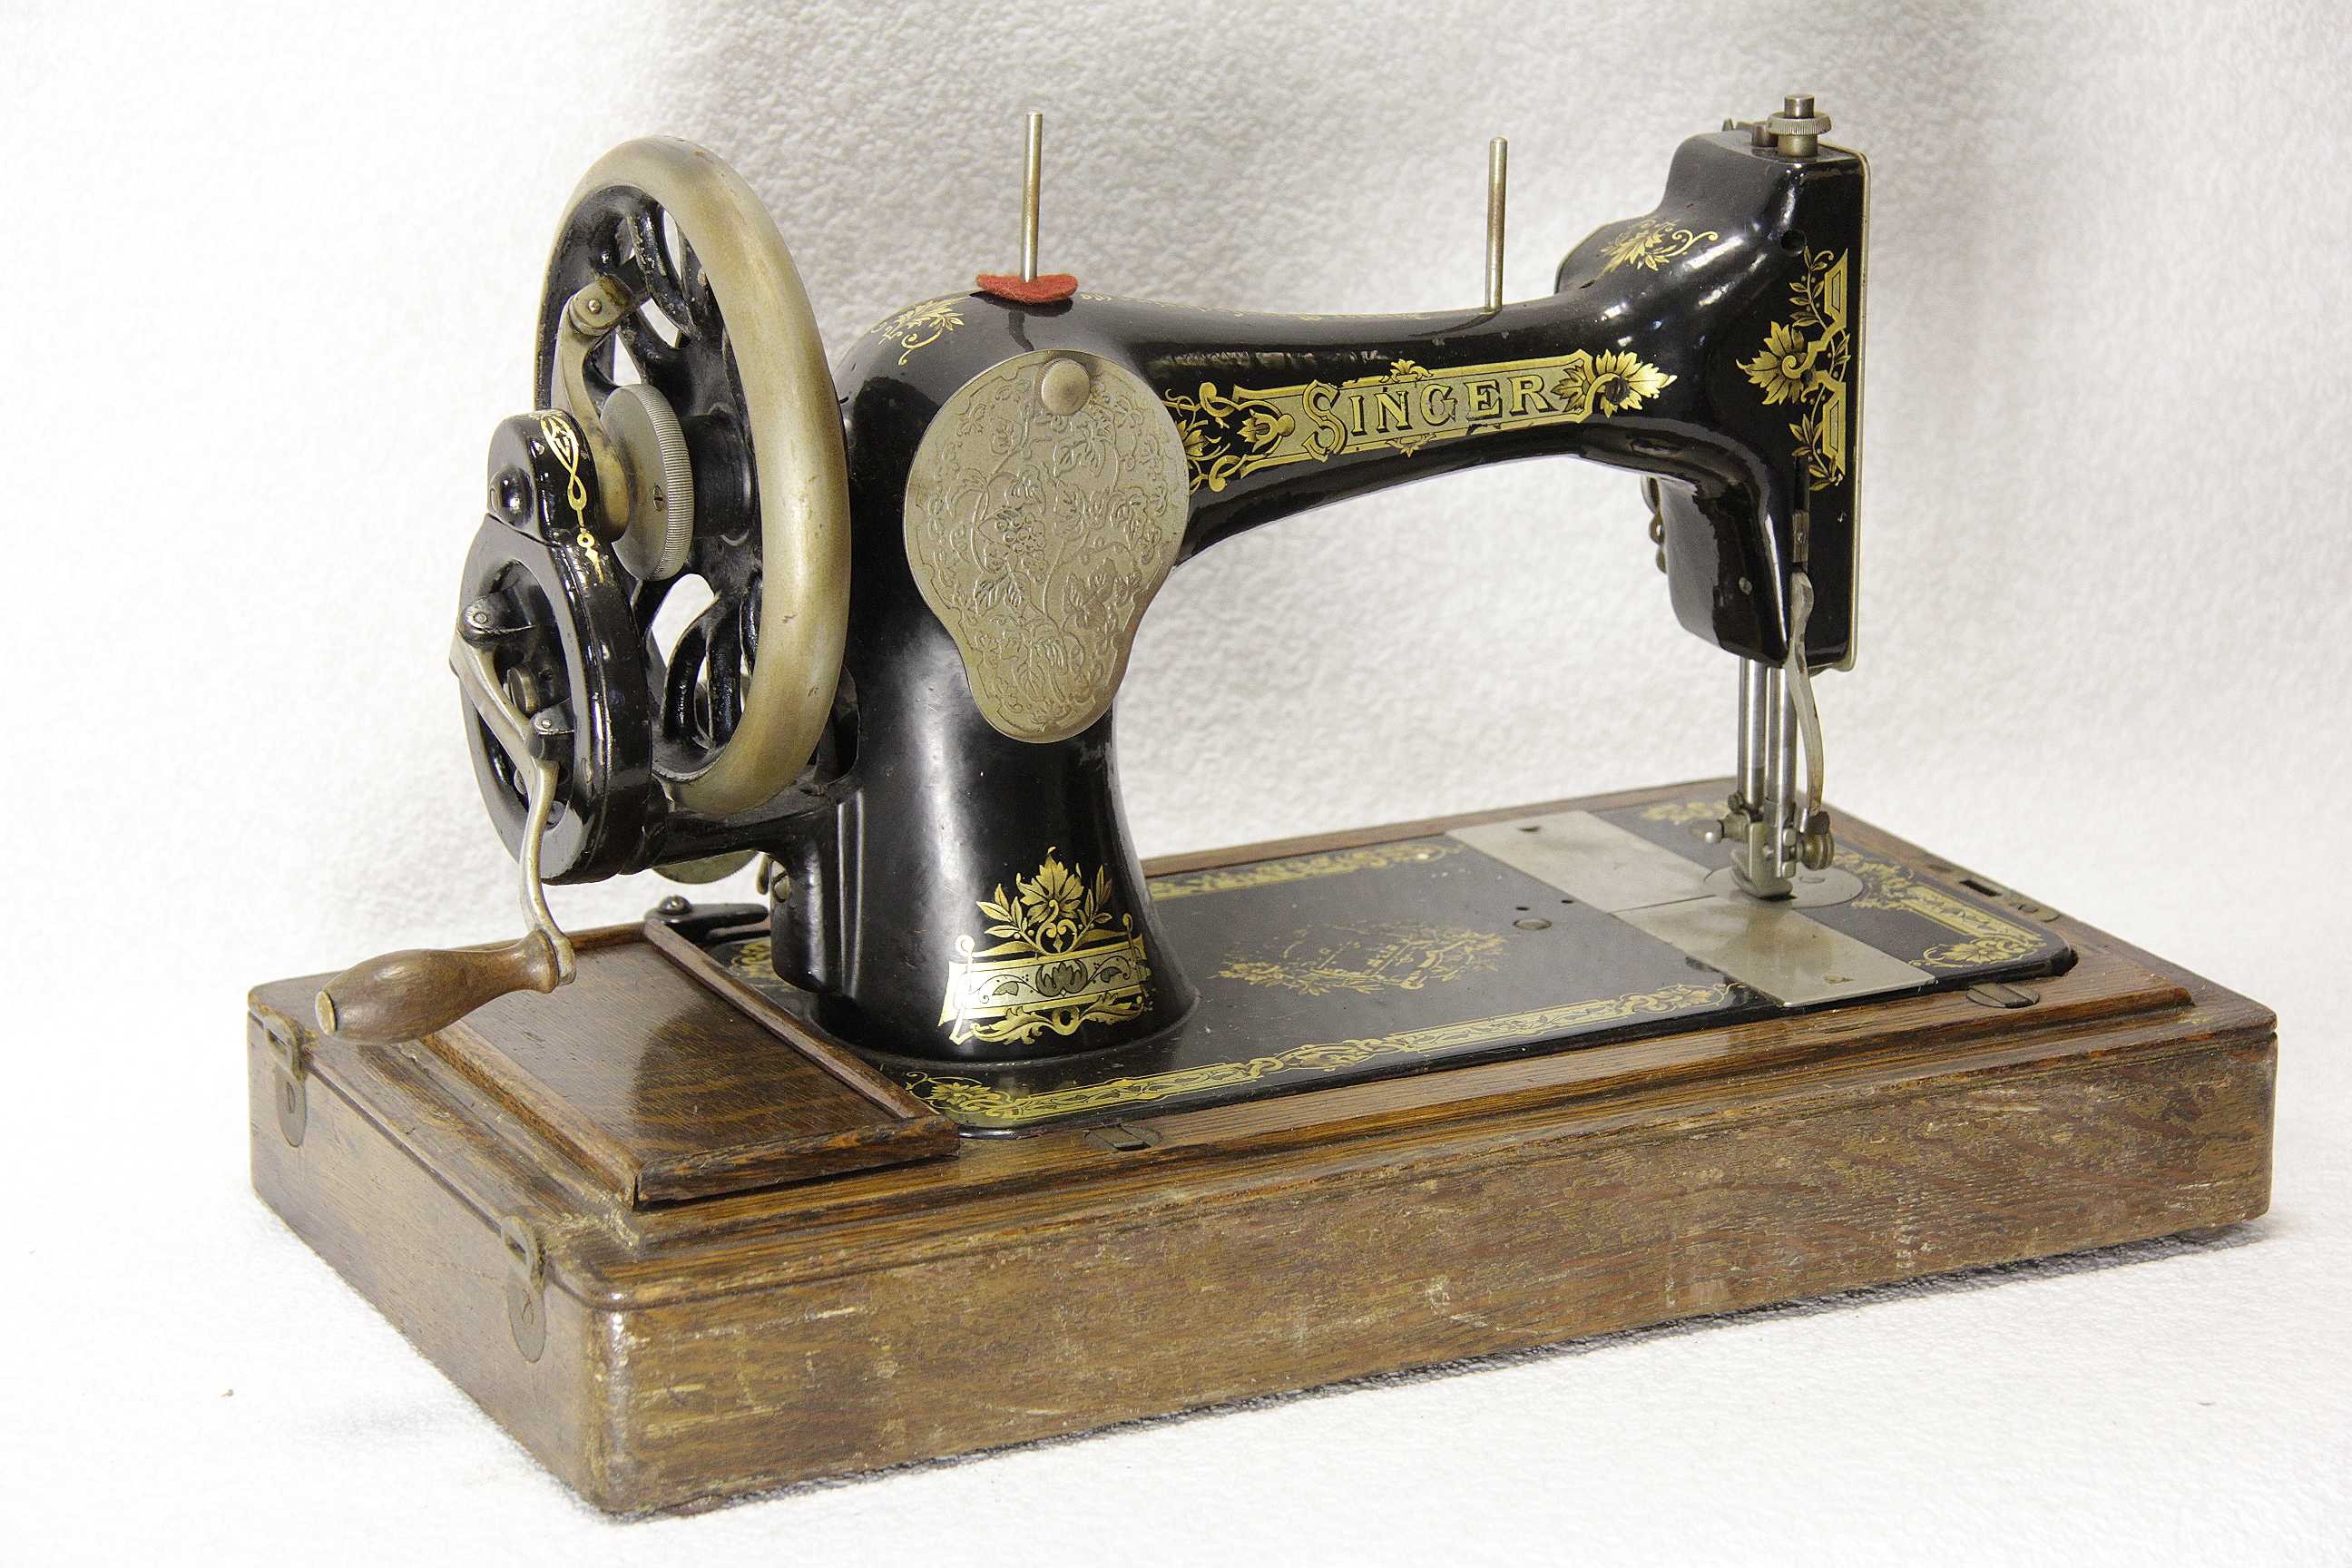 Старинная швейная машинка купить. Швейная машинка (Zinger super 2001). Швейная машинка Зингер 1851. Швейная машинка Зингер 1906. Швейная машинка Зингера 1841.